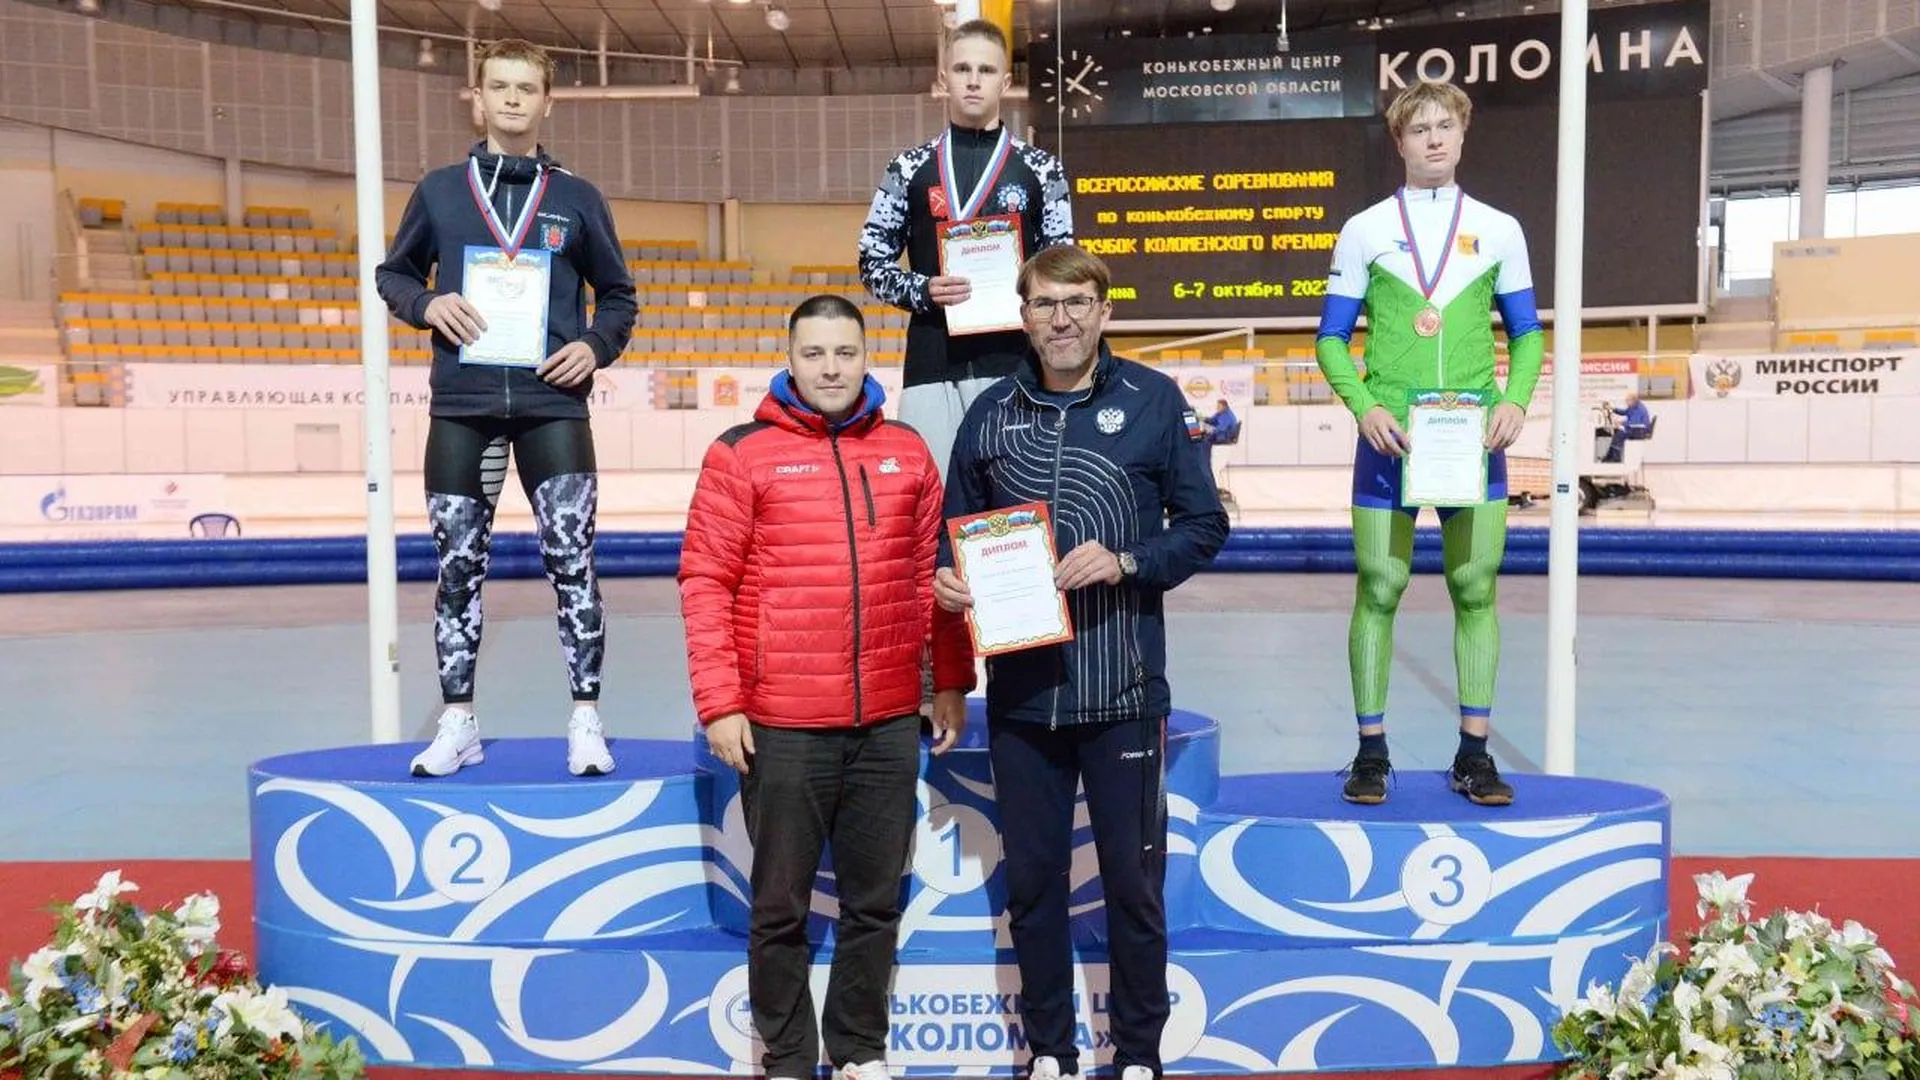 Новый рекорд конькобежного спорта установлен в Коломне